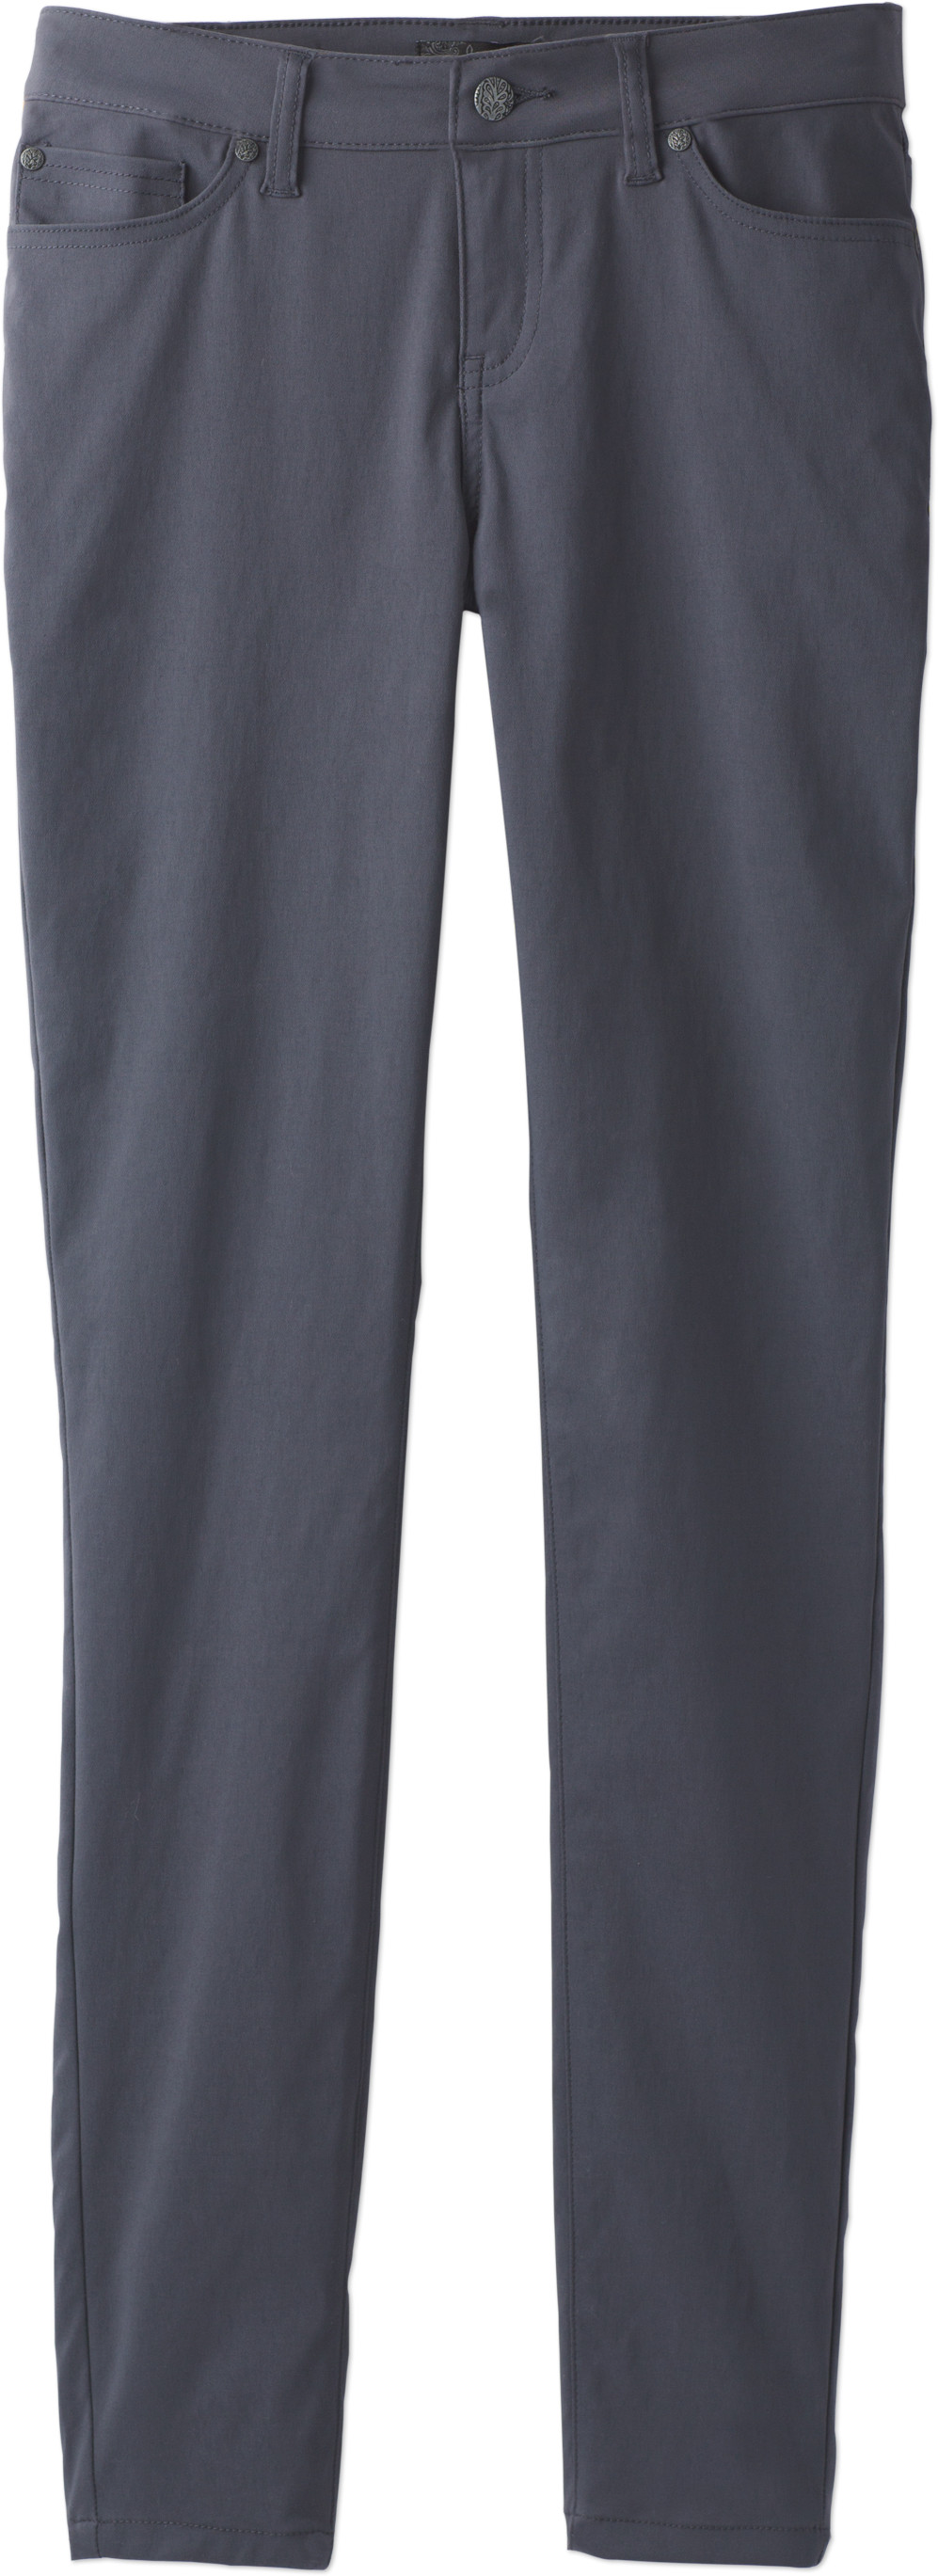 PRANA Briann Tall Inseam Women's Pants Sz 2 Coal W4317TL08 (New